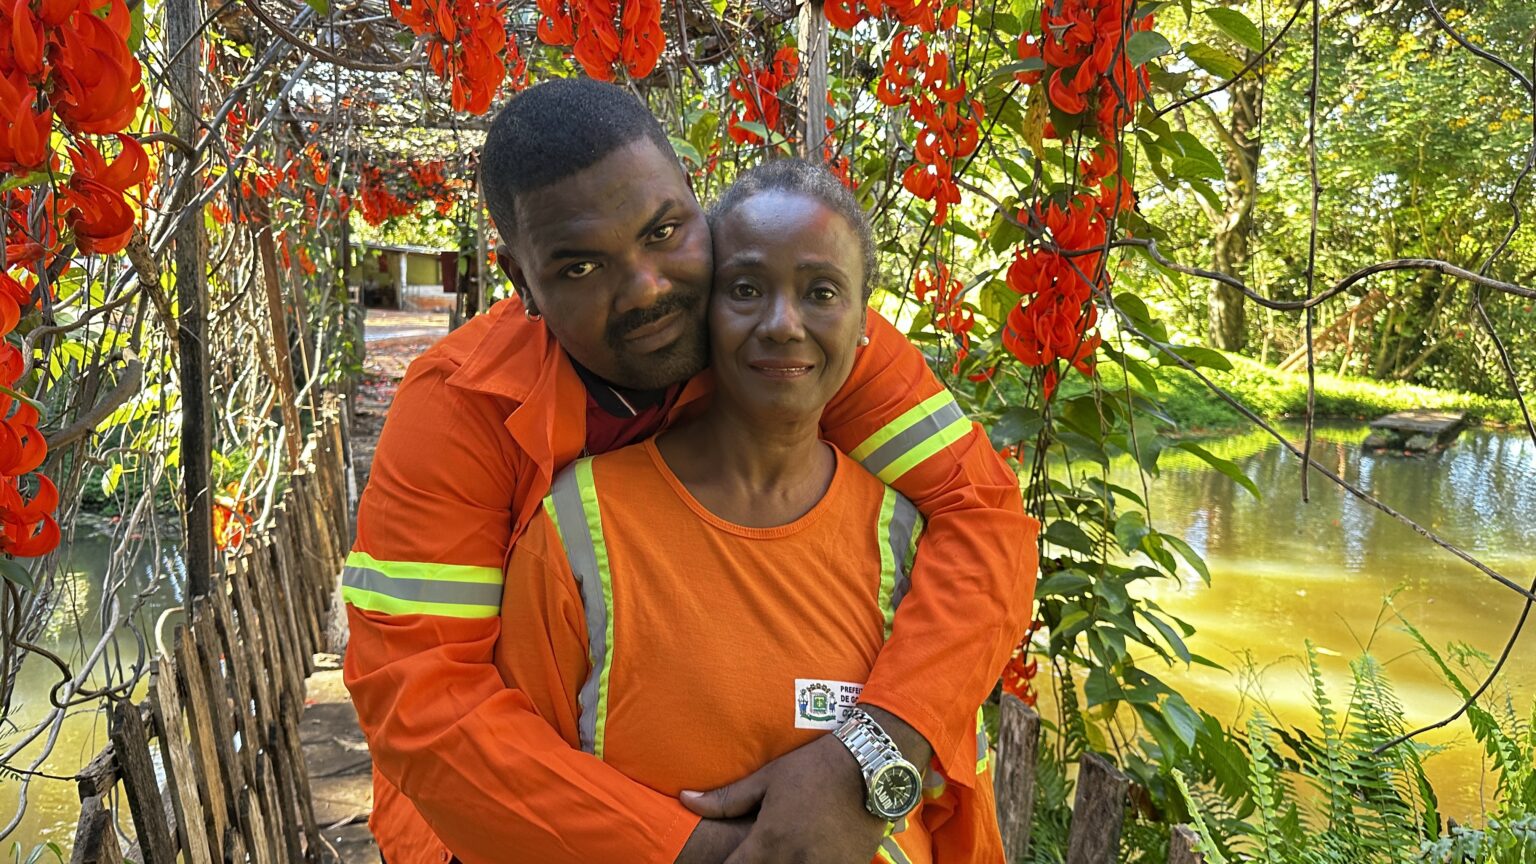 “Amor pelas plantas”: mãe e filho contam como a mesma profissão os uniu (Fotos: Luciano Magalhães)